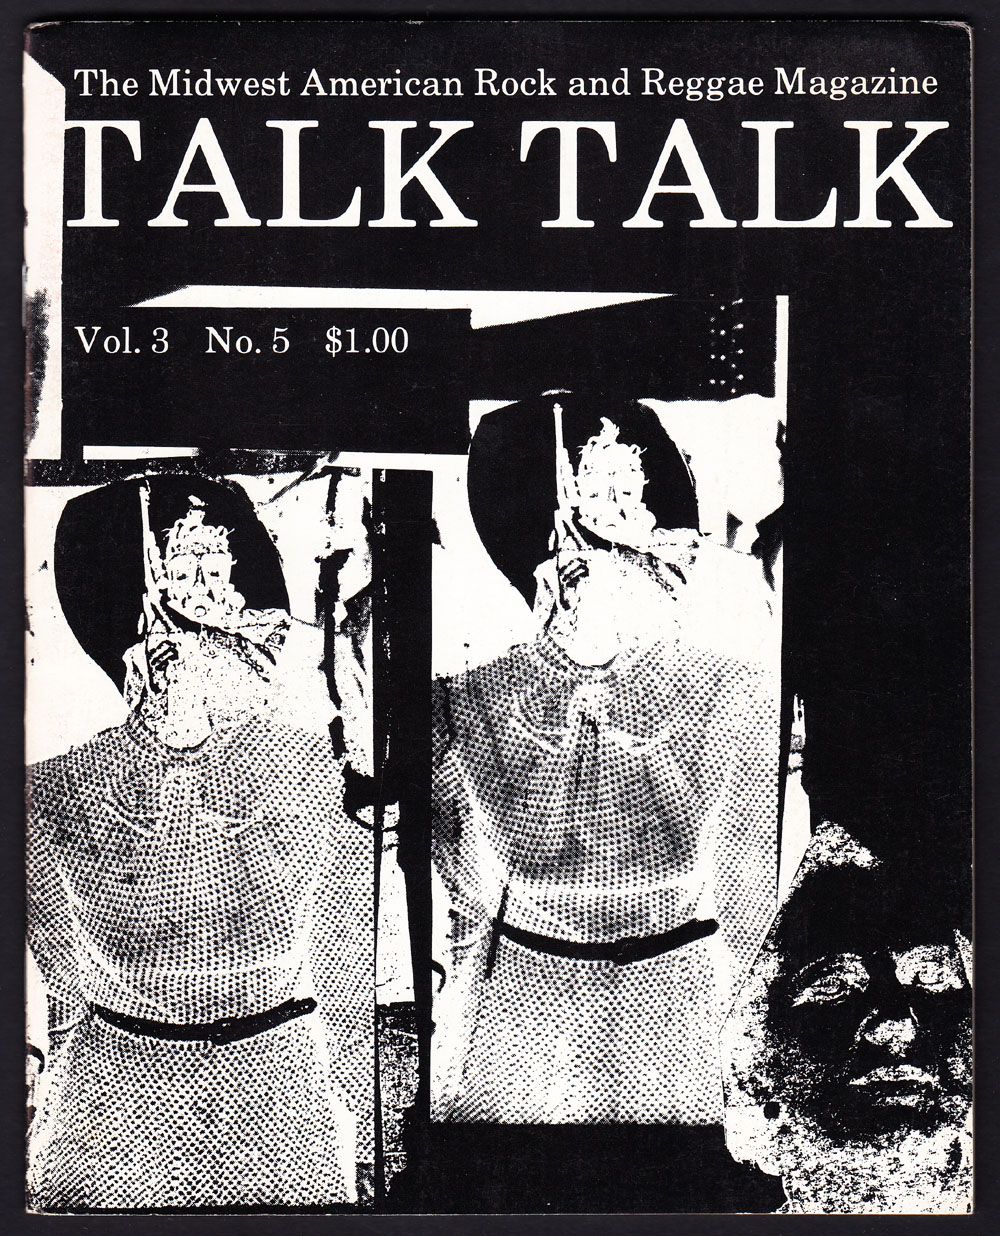 TALK TALK vol. III, no. 5